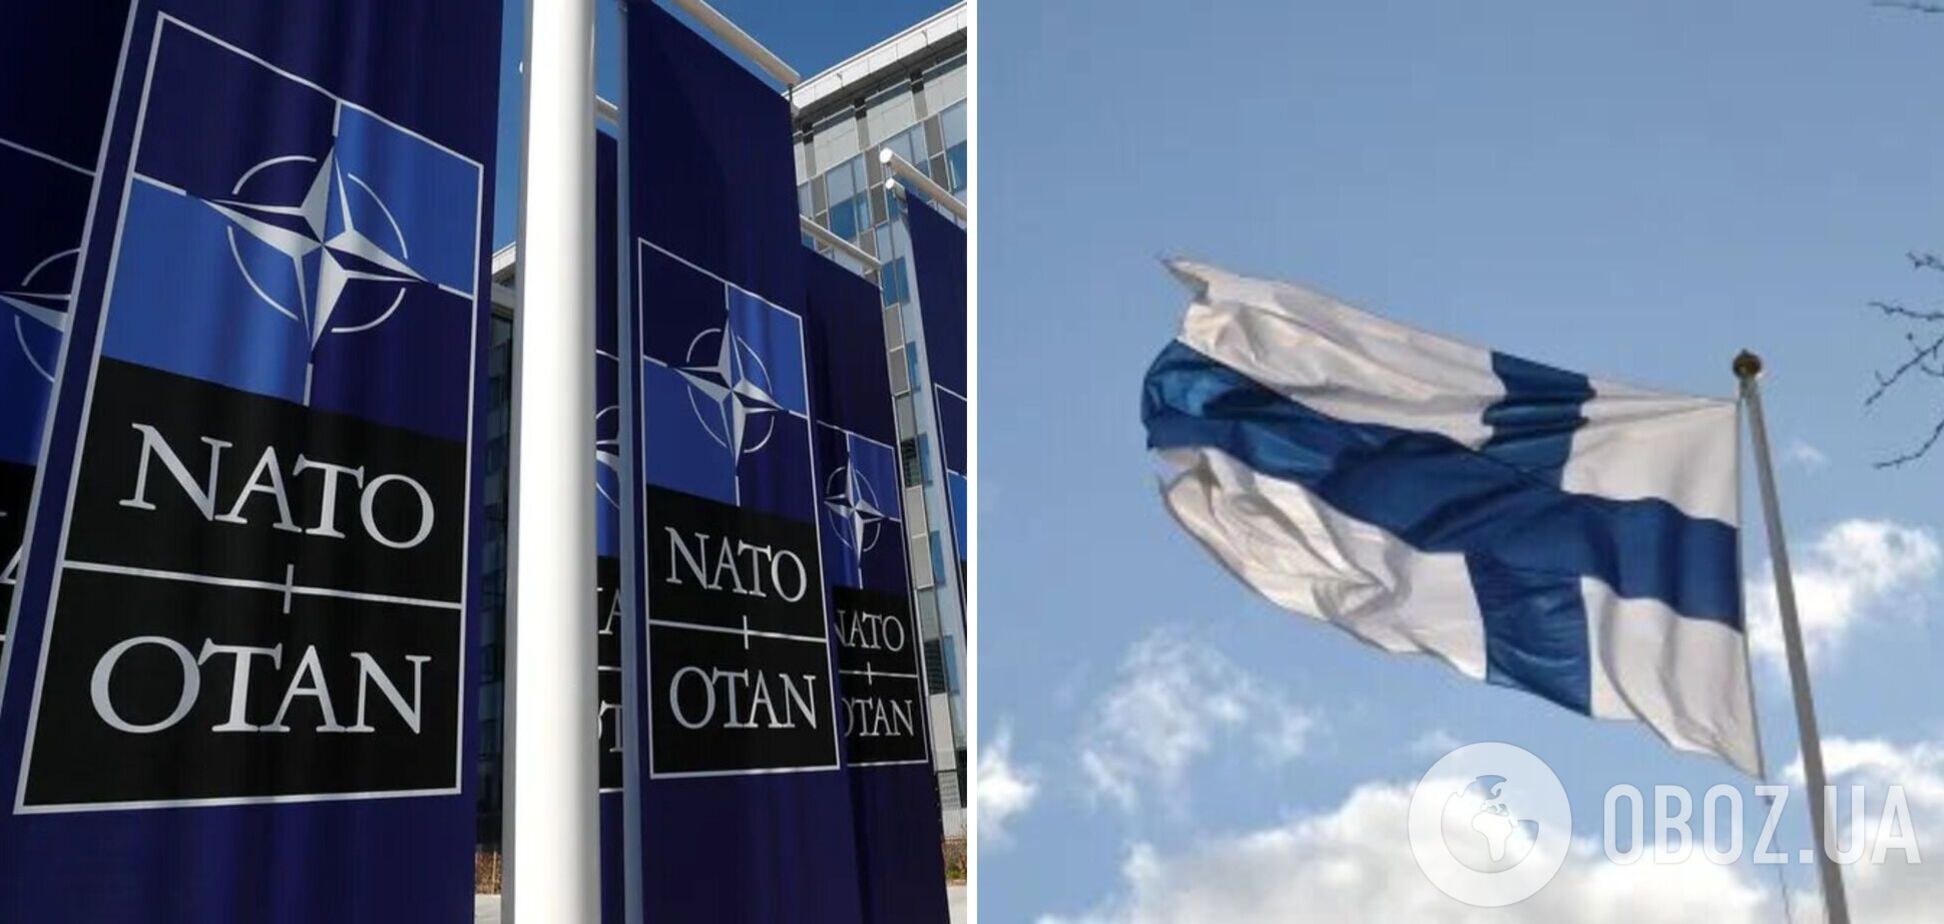 Финляндия подаст заявку на вступление в НАТО 16 мая – СМИ